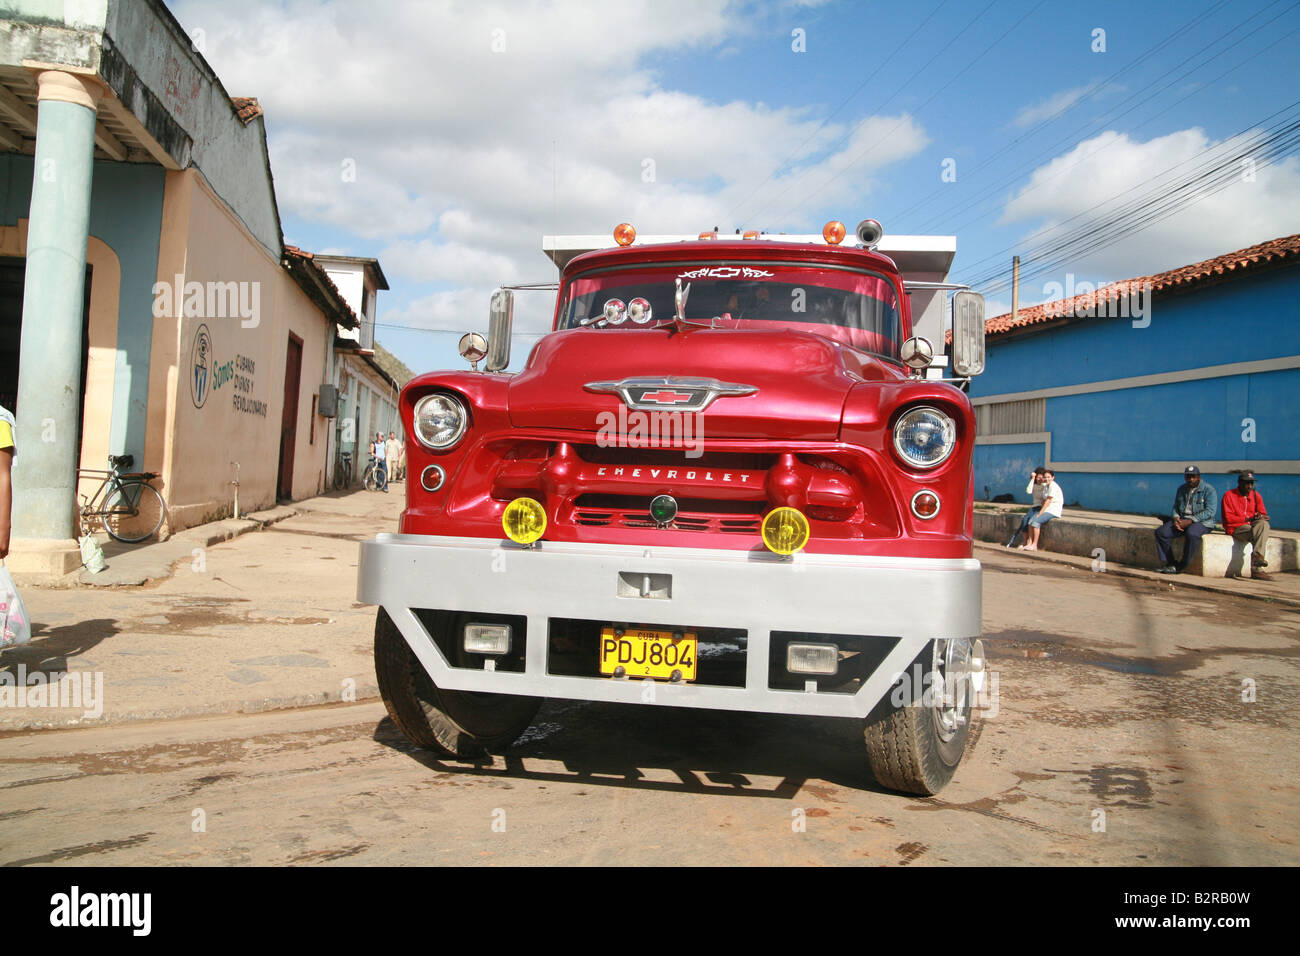 Vintage camion Chevrolet dans une rue de la province de Pinar del Río Viñales Cuba Amérique Latine Banque D'Images